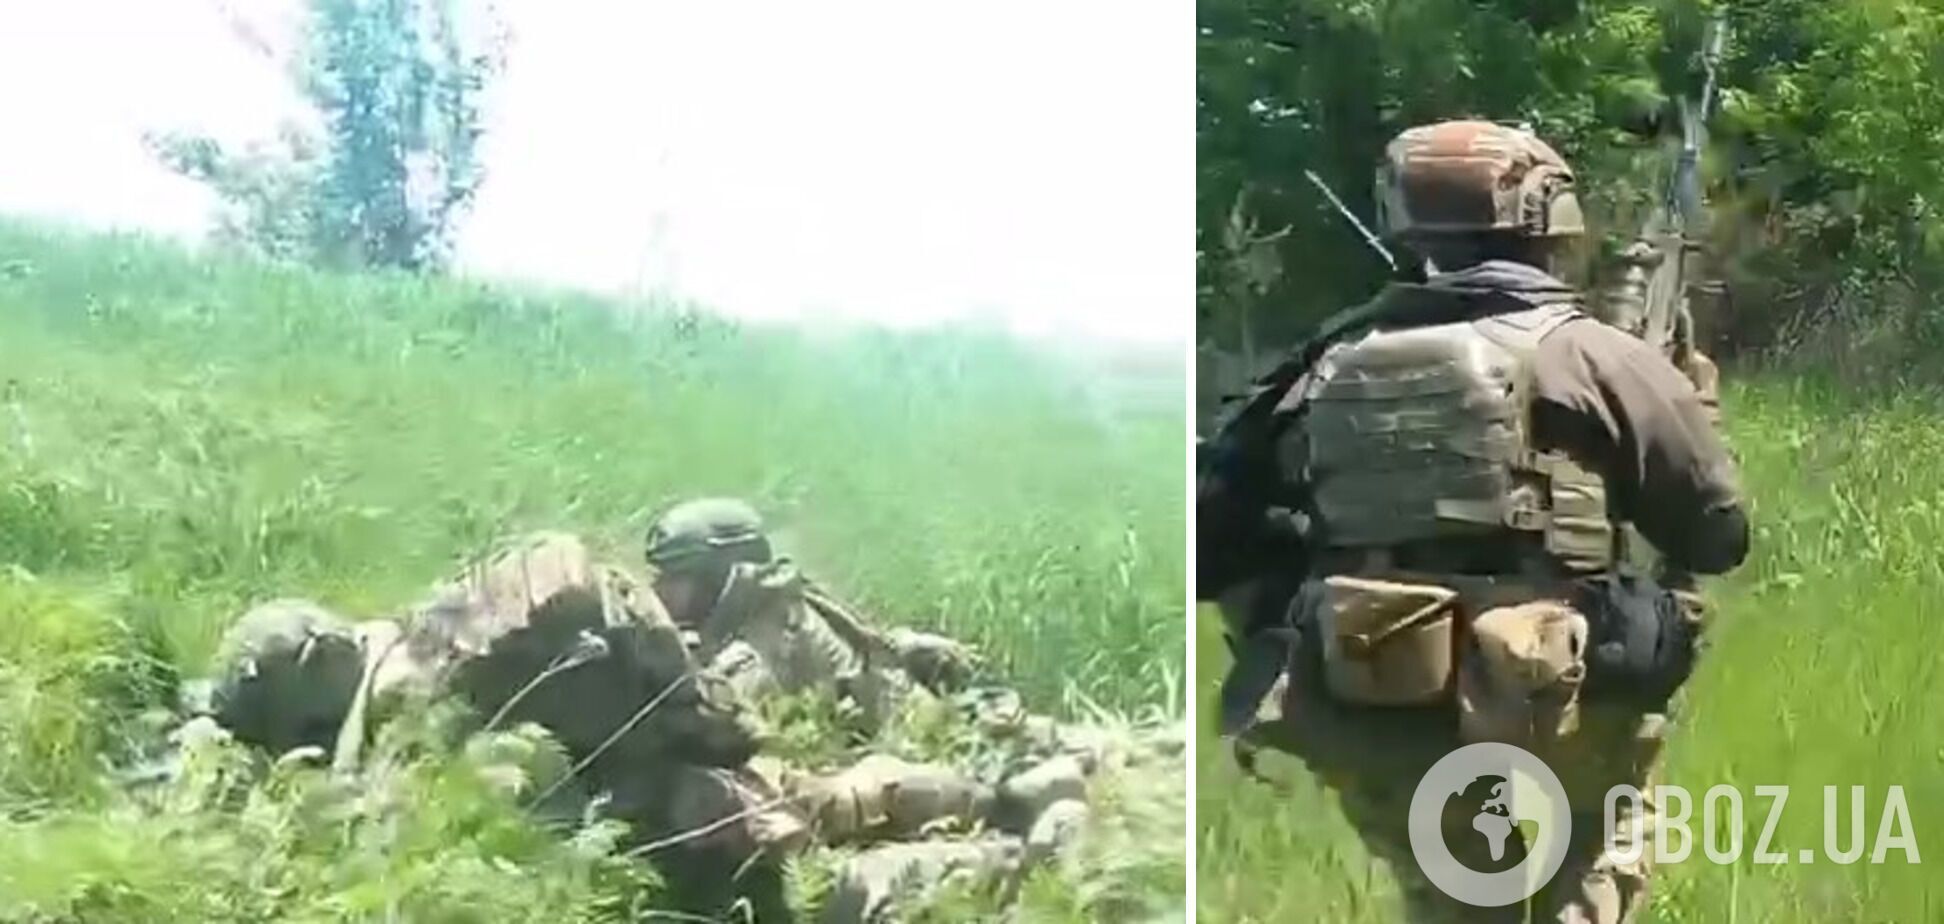 Кадры из наступления украинских воинов на российских оккупантов